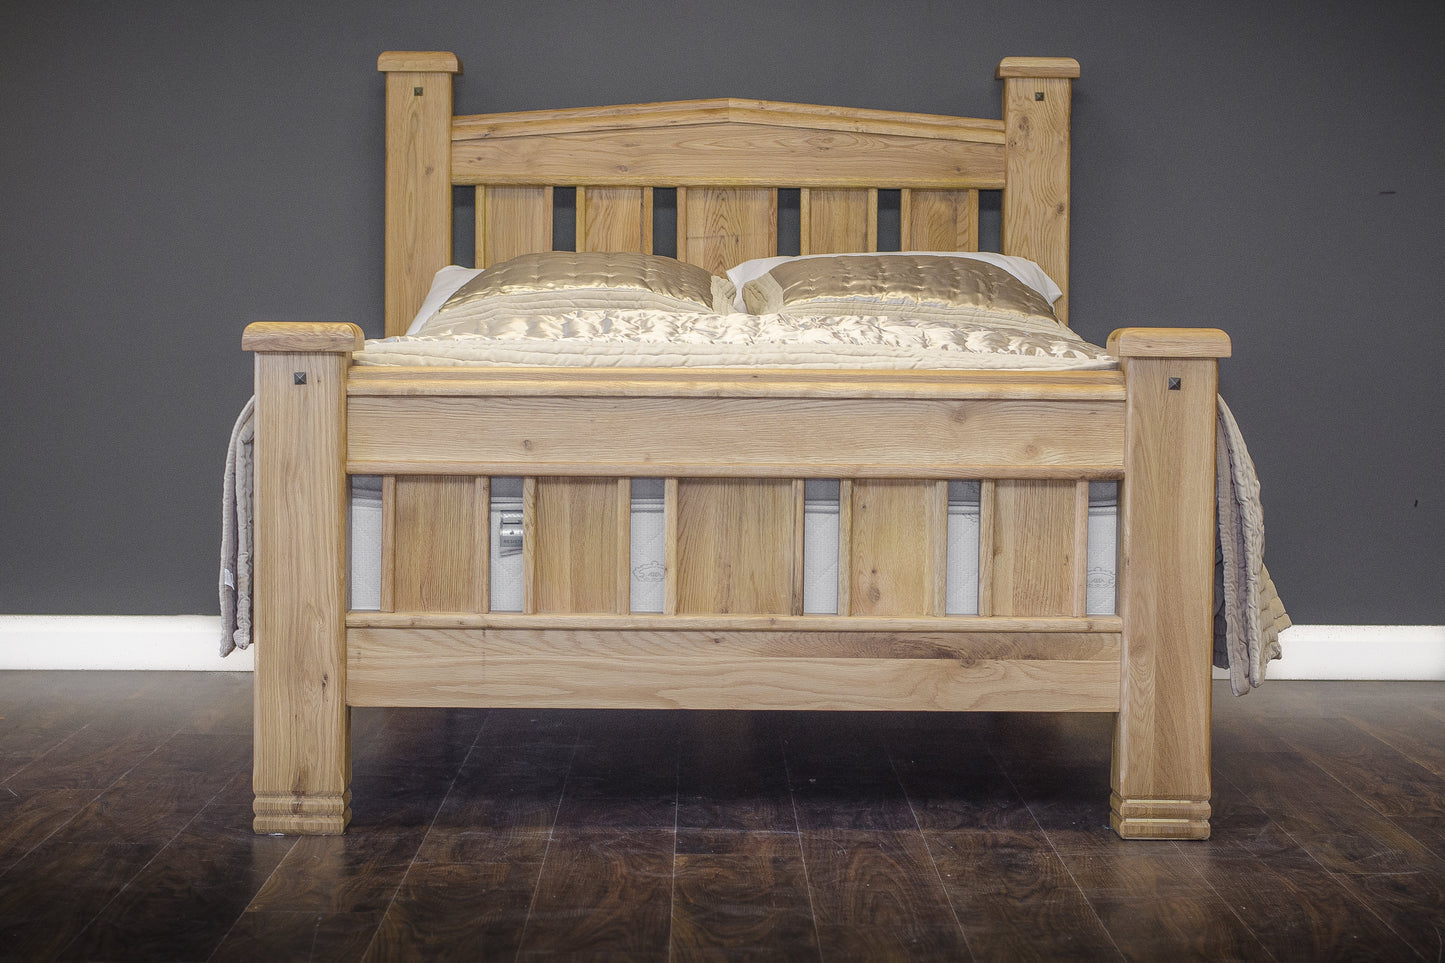 Kensington King 5'0 Oak Wooden Bed Frame